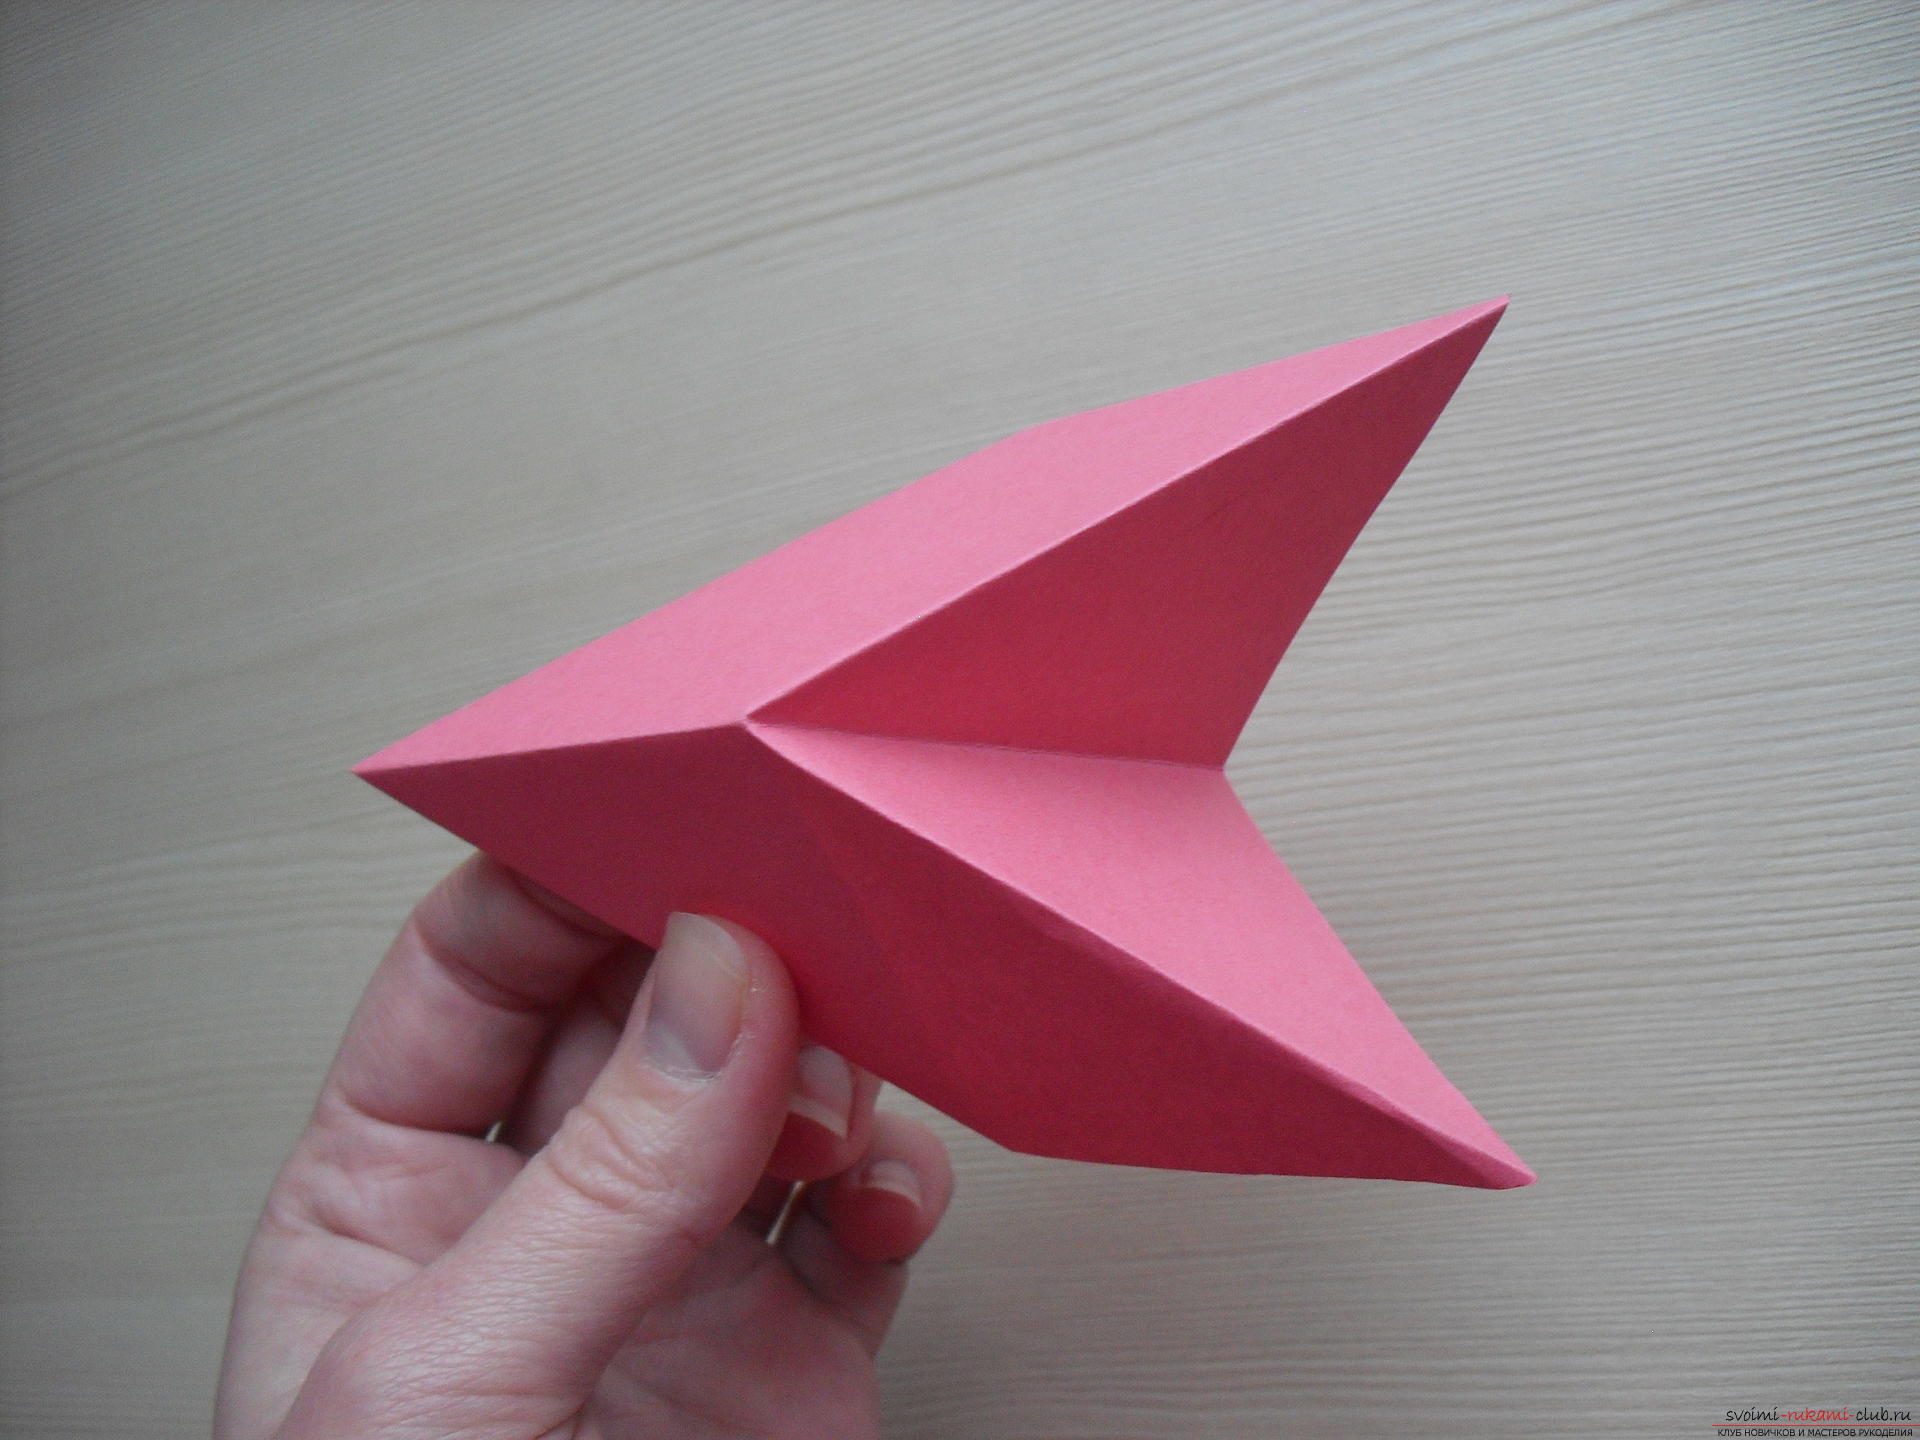 Оригами из бумаги оригами трансформер из бумаги: Оригами трансформер с кубиками из бумаги своими руками